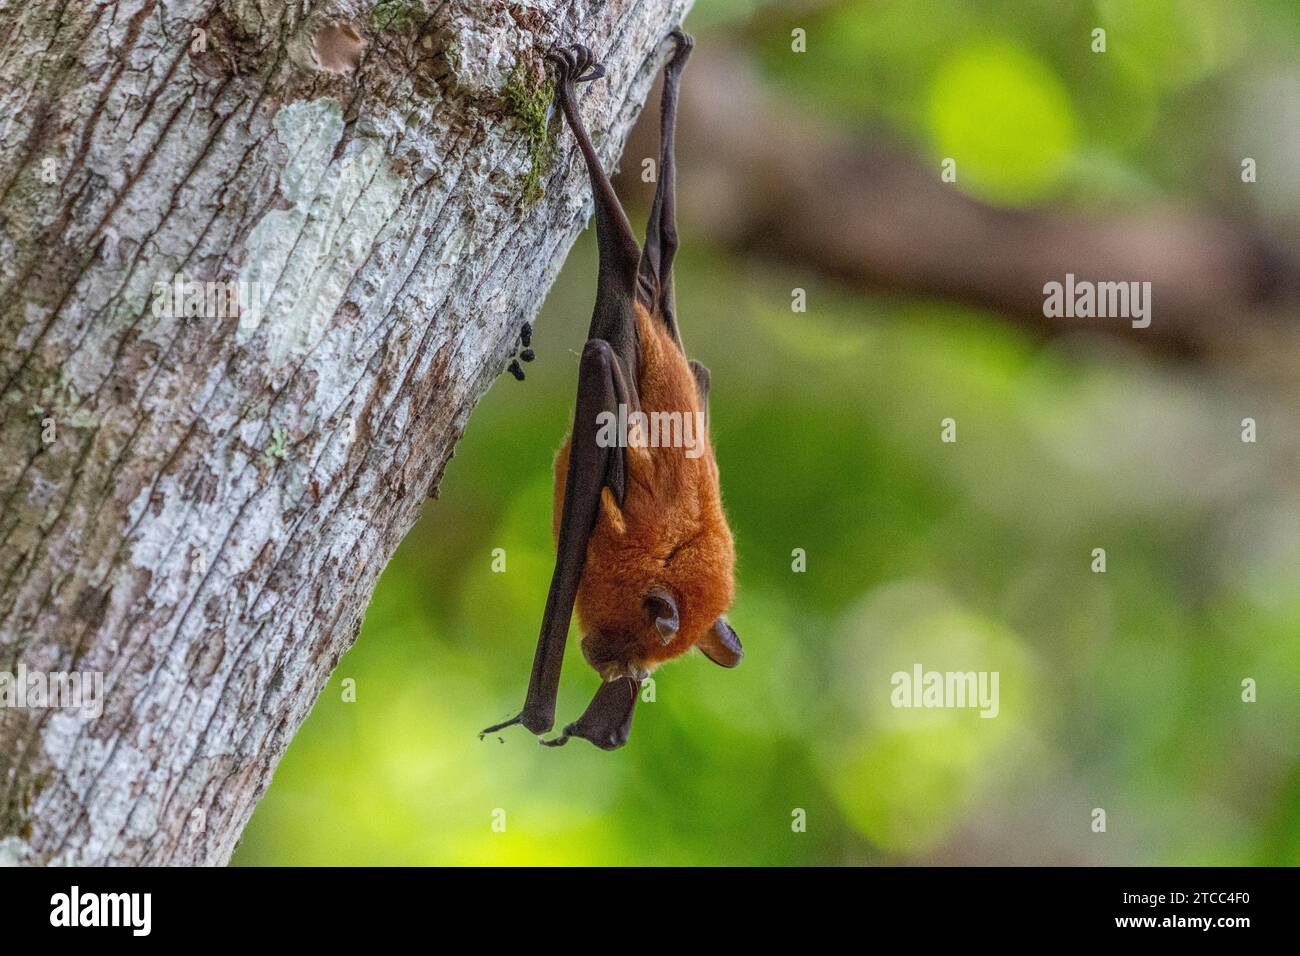 Pistrello dormiente appeso su un albero nella riserva naturale di Lokobe in Madagascar, Nosy Be Foto Stock